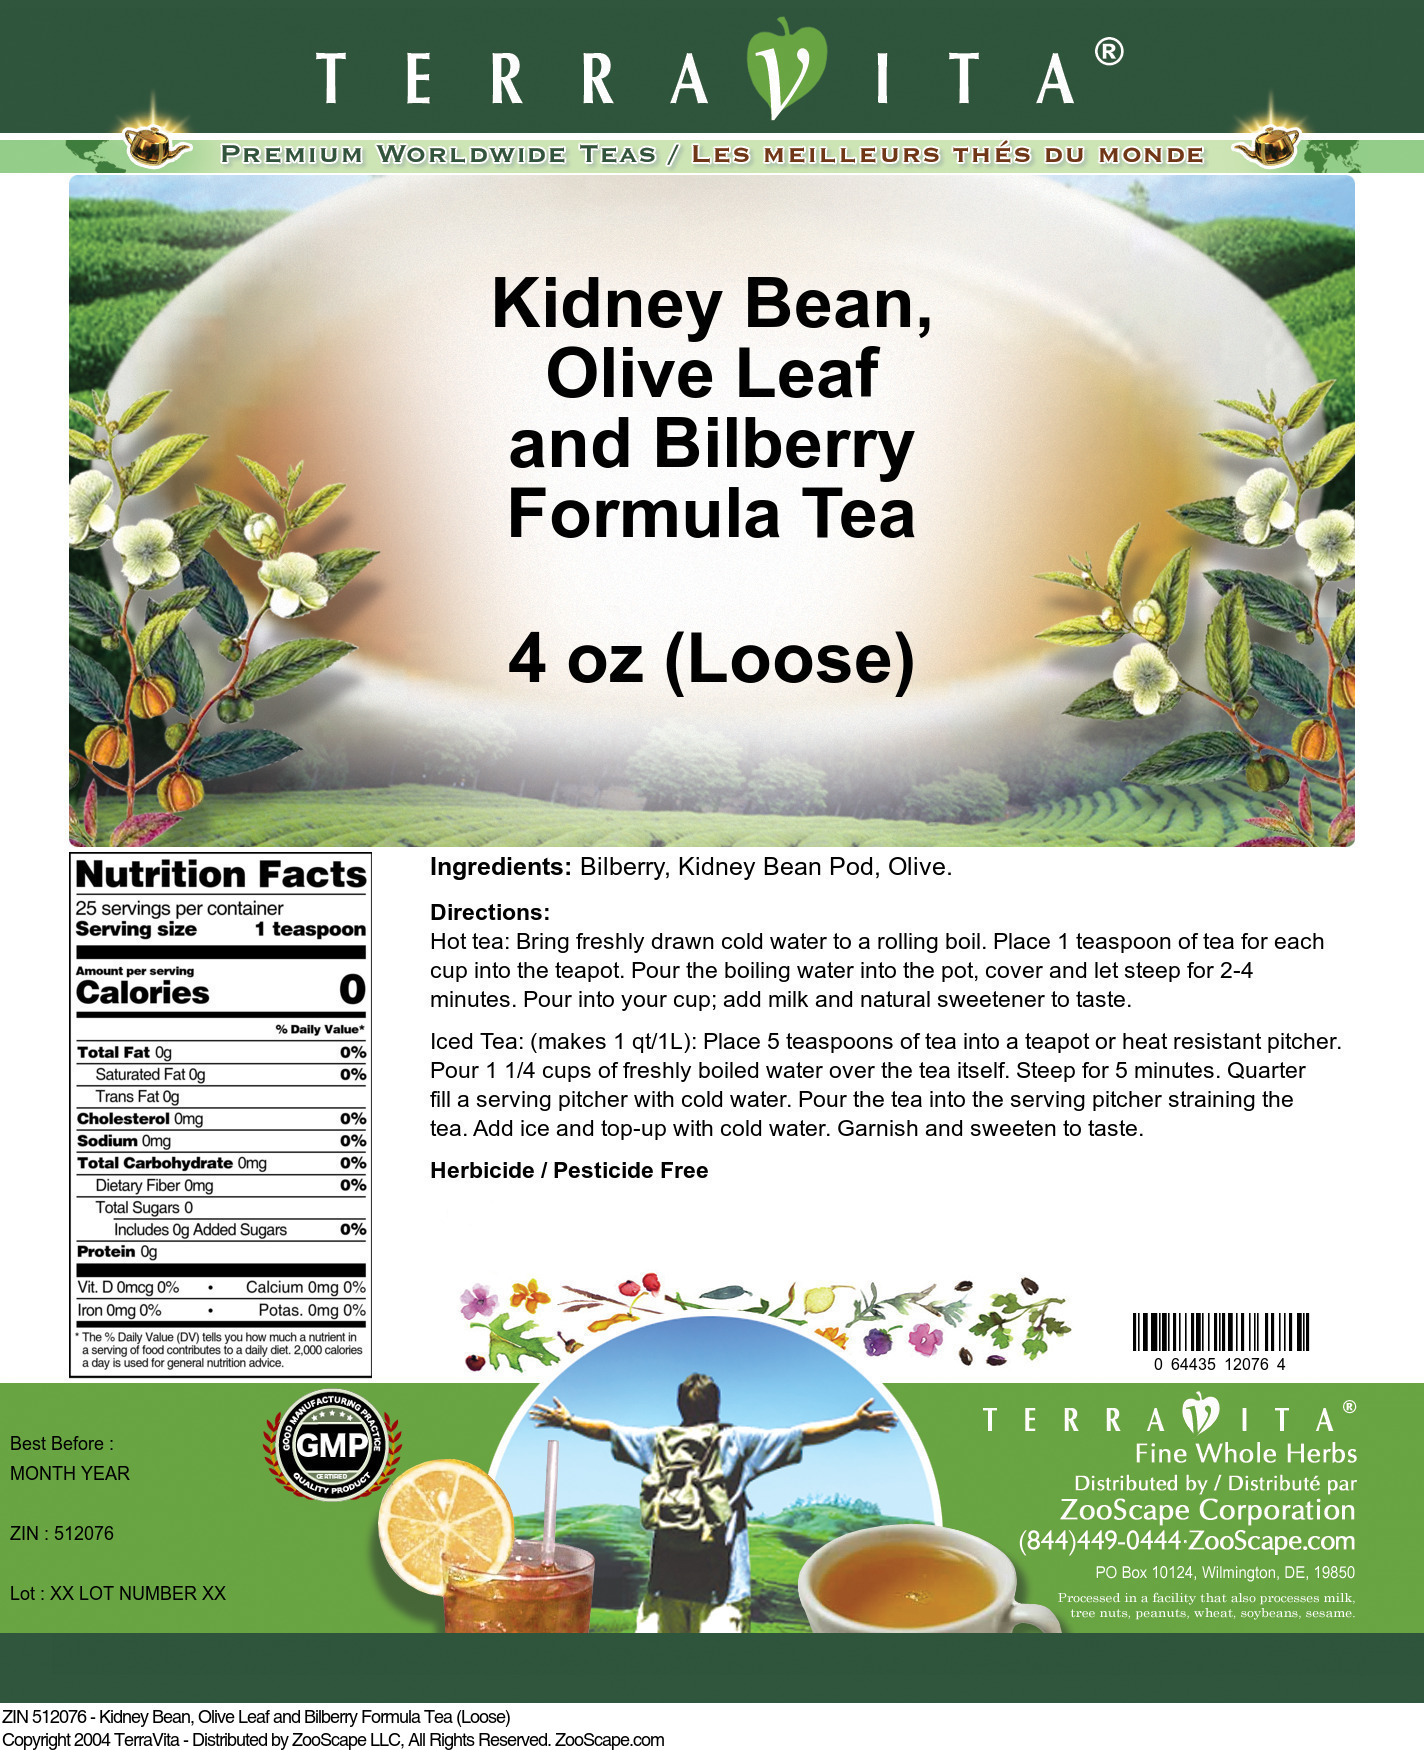 Kidney Bean, Olive Leaf and Bilberry Formula Tea (Loose) - Label